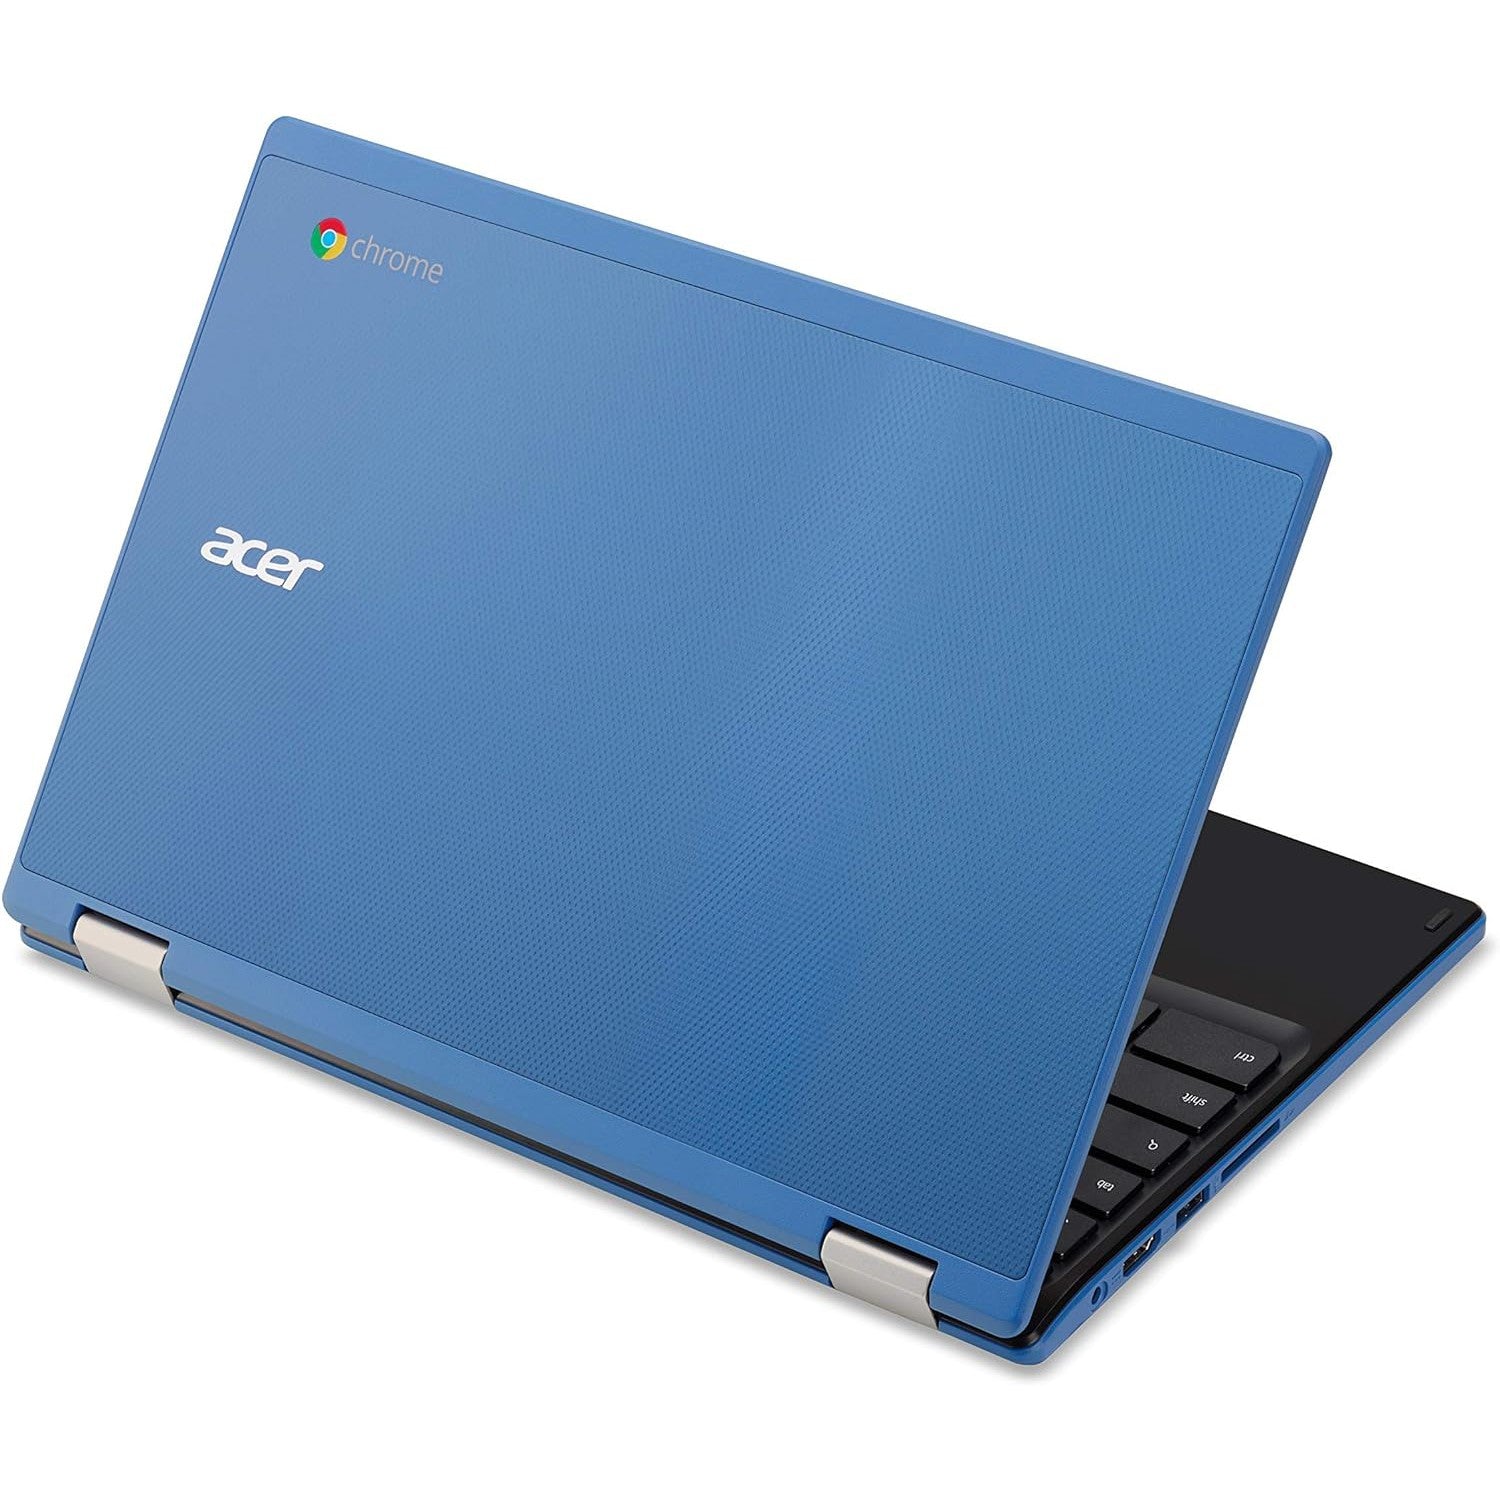 Acer Chromebook 11 Intel Celeron N3150 4GB RAM 16GB - Blue - Good